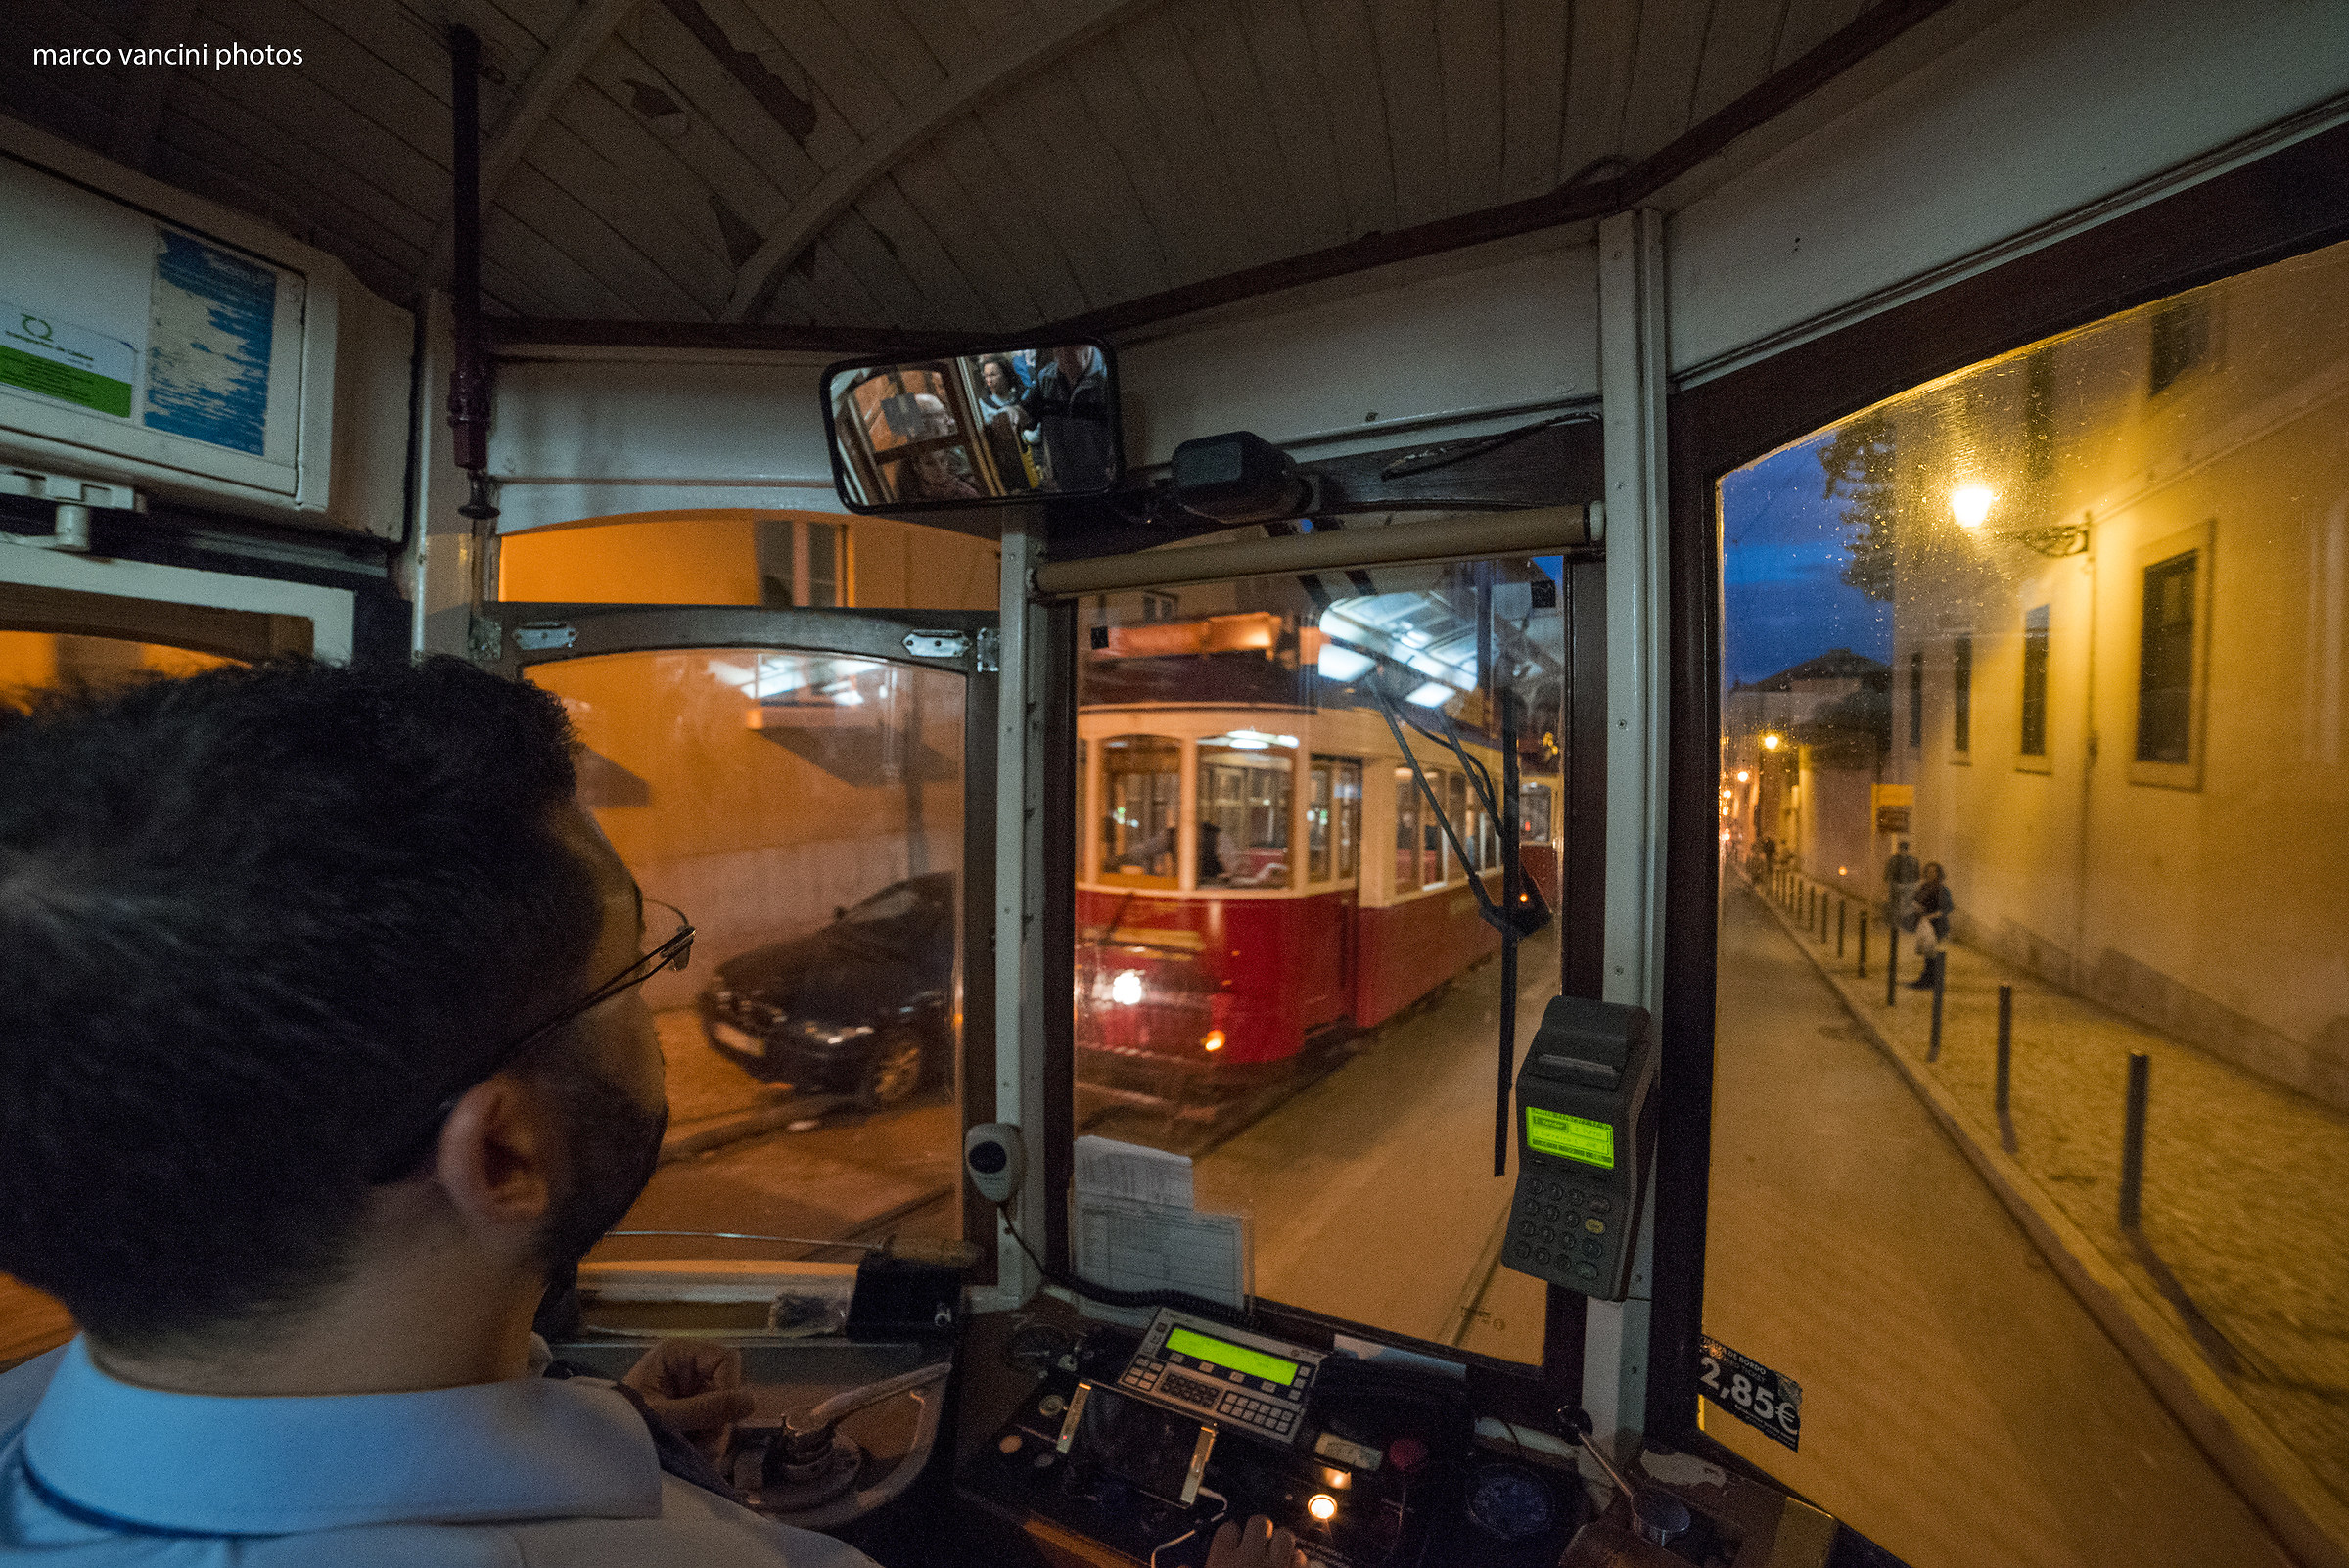 Lisbona, a bordo del tram 28...